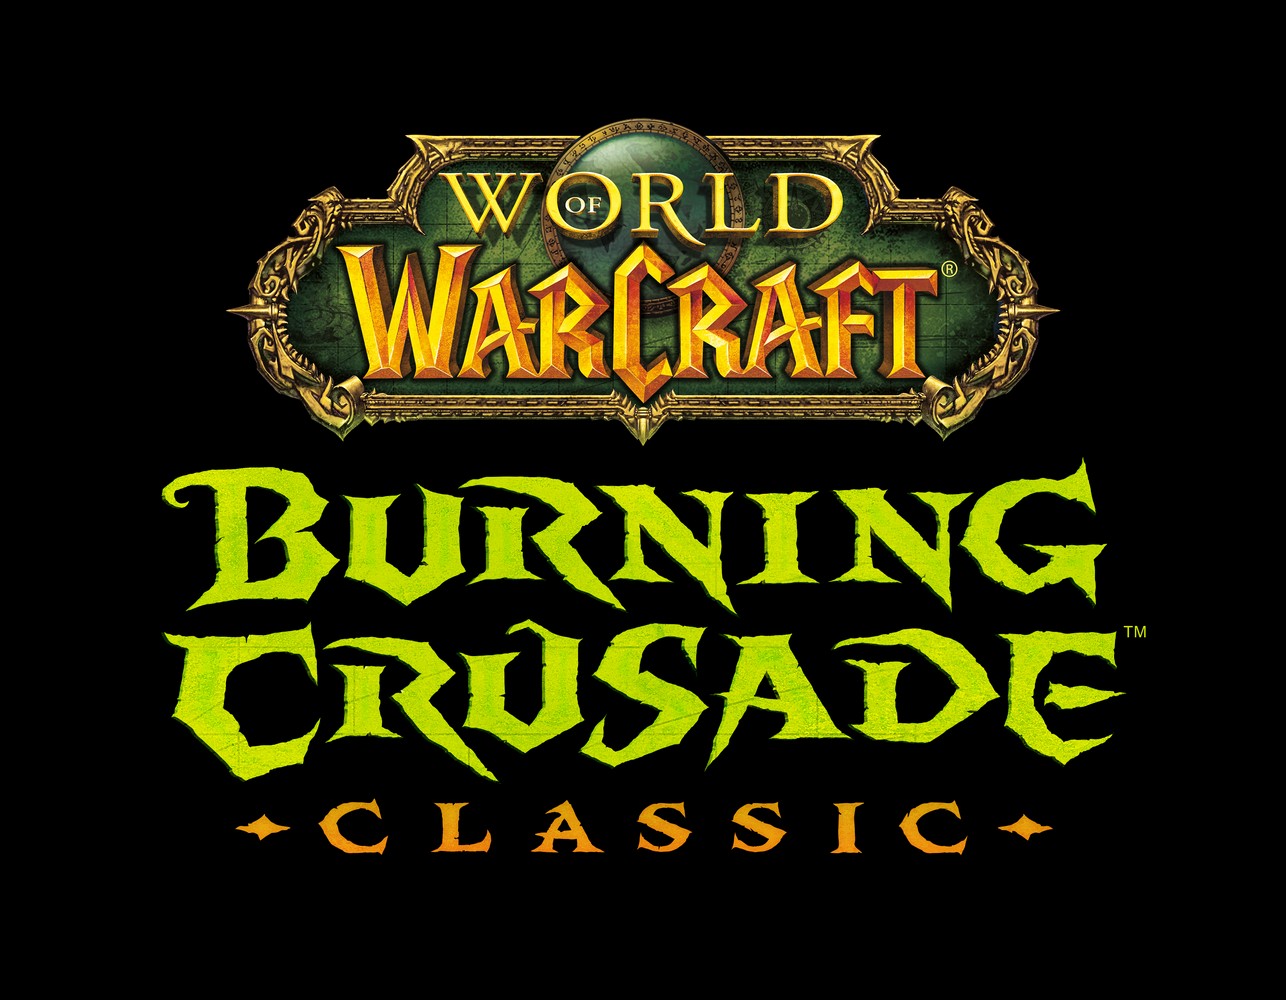 Foto de Blizzard da a conocer la fecha de lanzamiento de World of Warcraft: Burning Crusade Classic